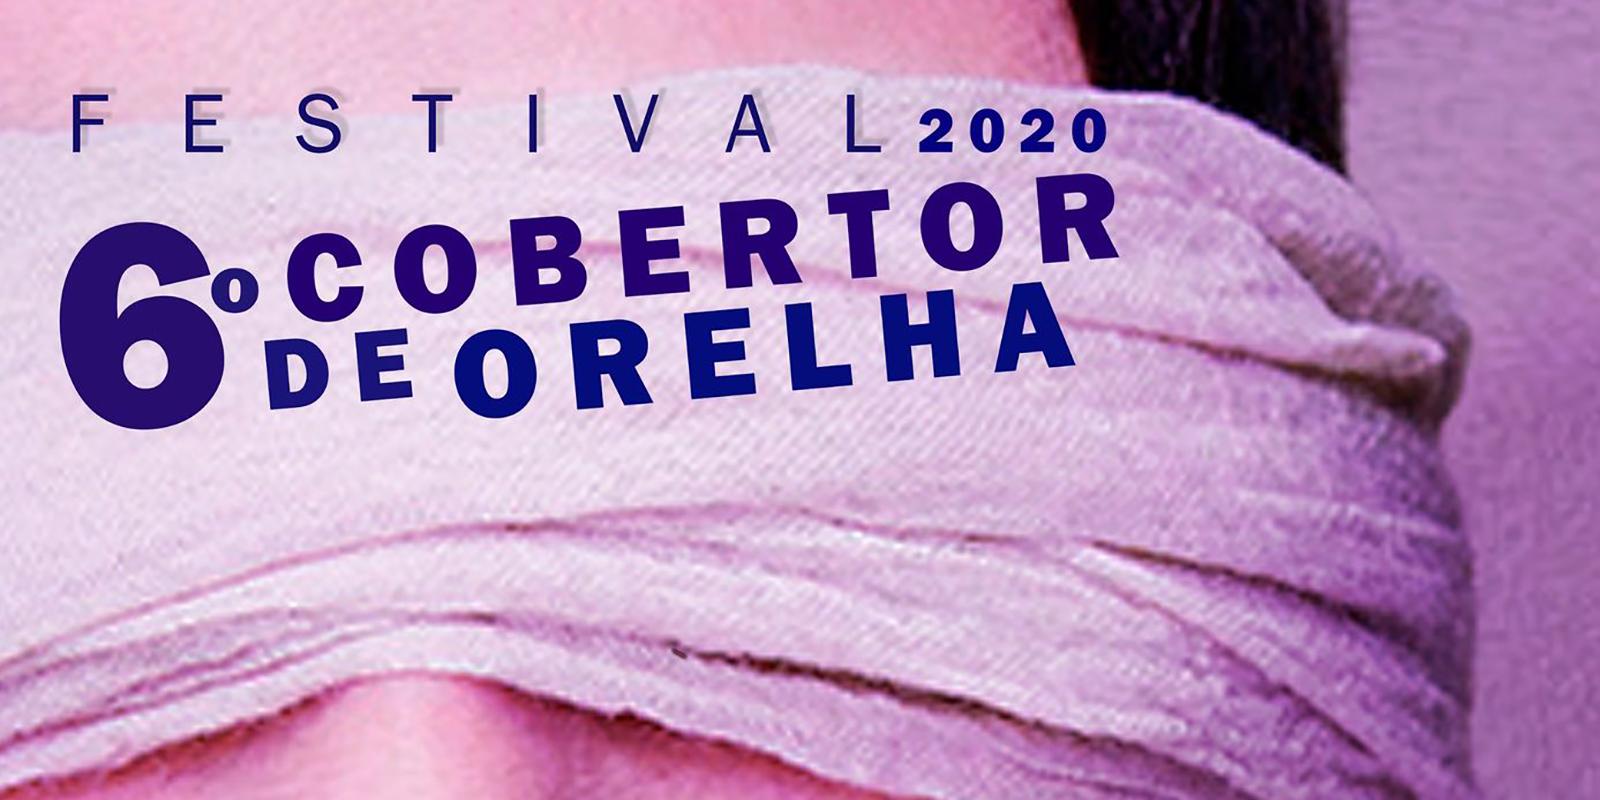 6º Festival Cobertor de Orelha será realizado neste fim de semana em formato virtual